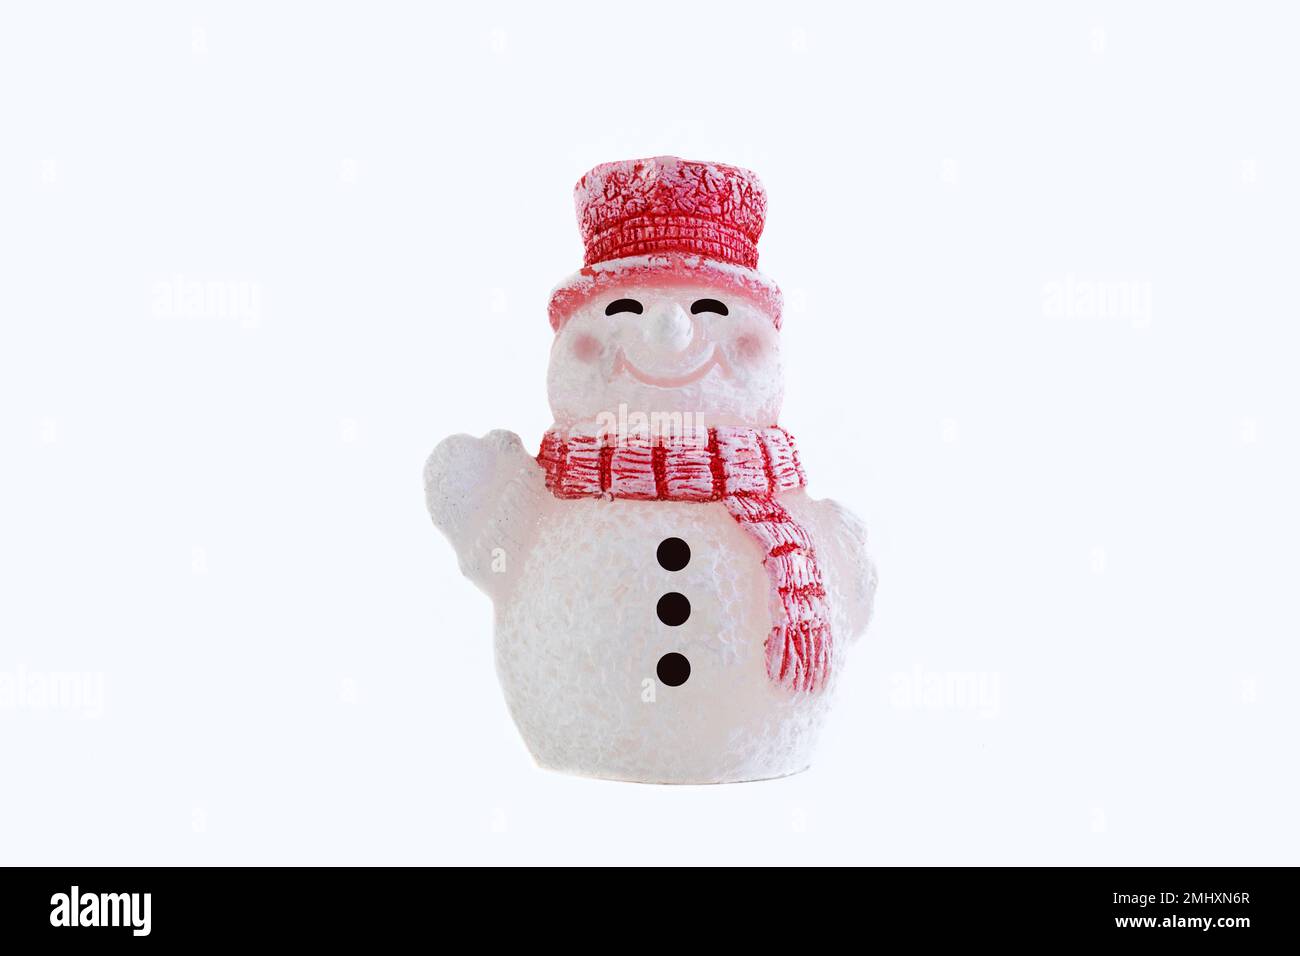 Sourire bonhomme de neige Banque d'images détourées - Alamy